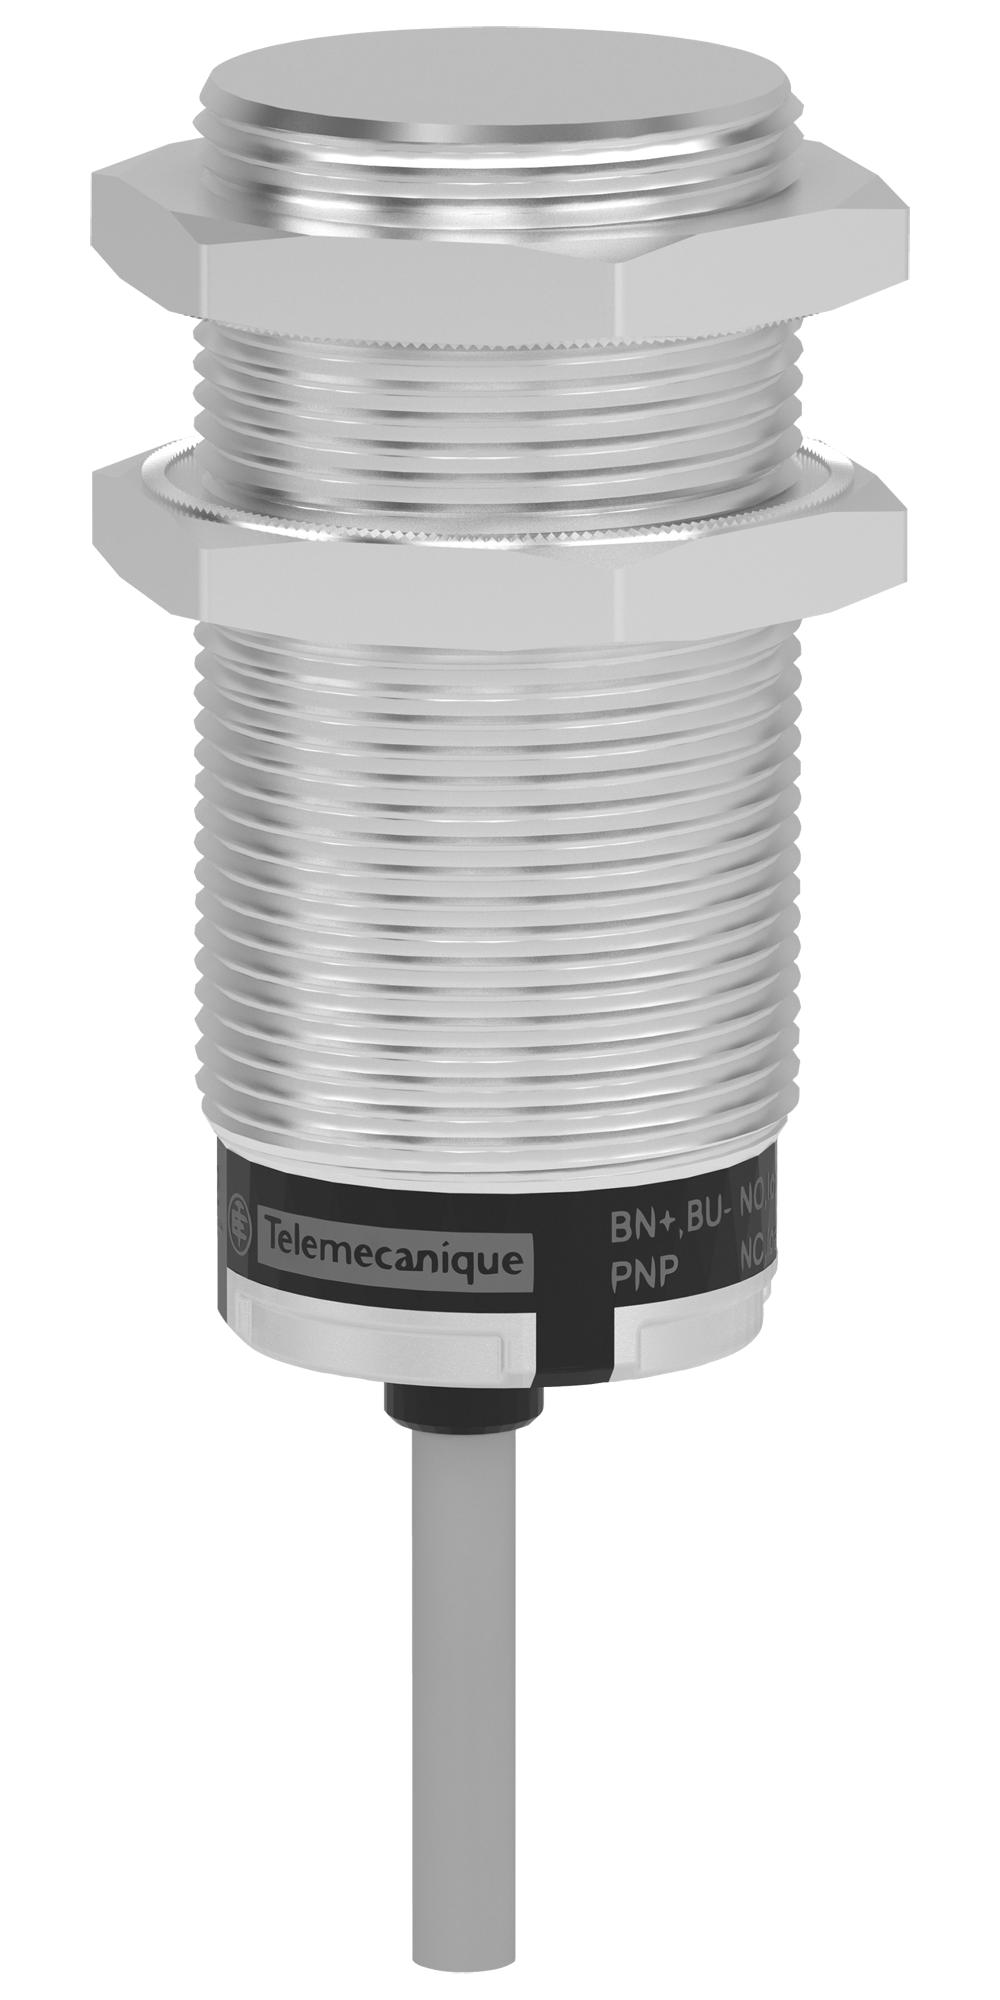 Telemecanique Sensors Xt530B1Pal2 Sensor, Capacitor Proximity, 10mm, 24Vdc